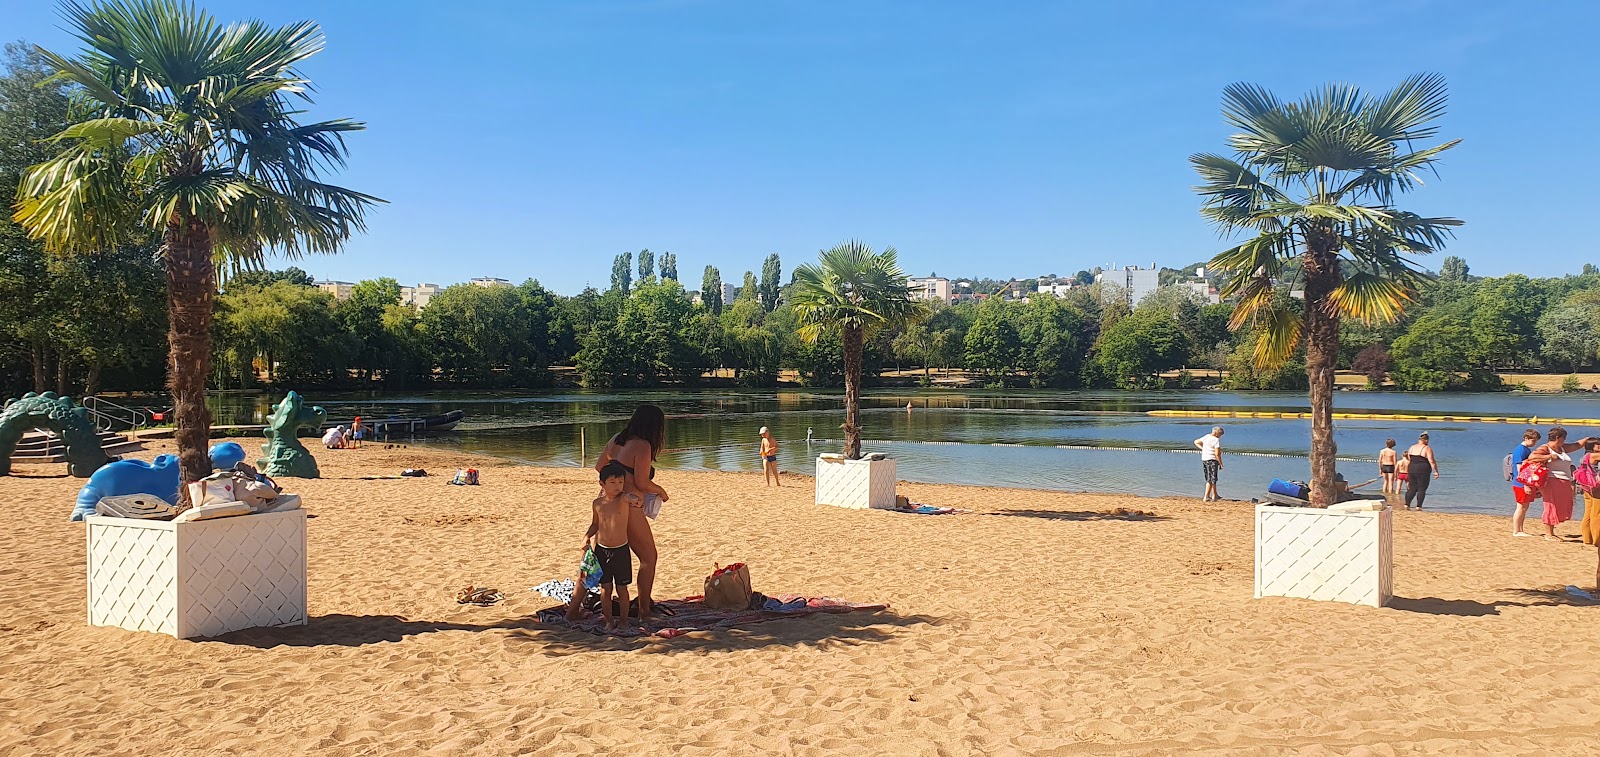 Dijon Plajı'in fotoğrafı çok temiz temizlik seviyesi ile